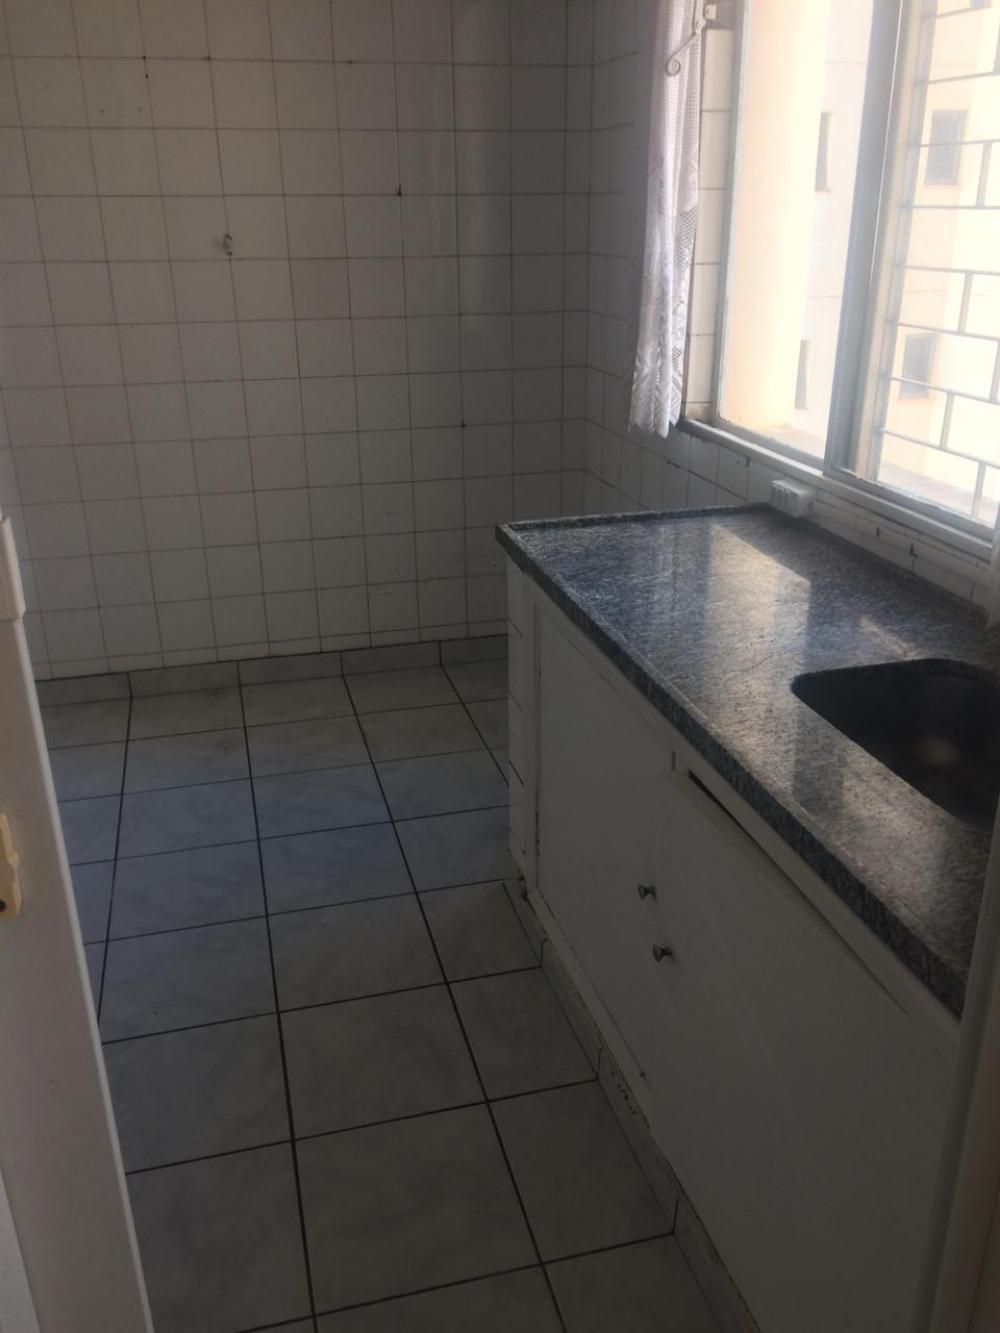 Alugar Apartamento / Padrão em São José do Rio Preto apenas R$ 550,00 - Foto 4